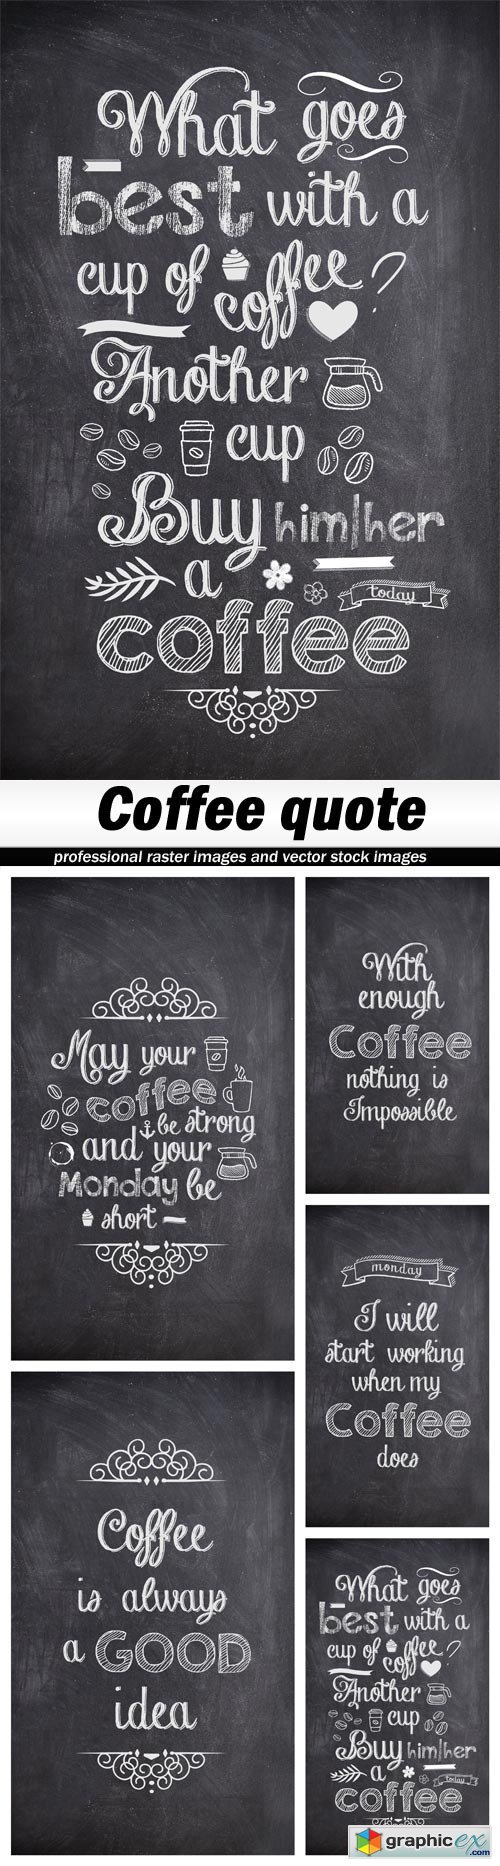 Coffee quote - 5 UHQ JPEG